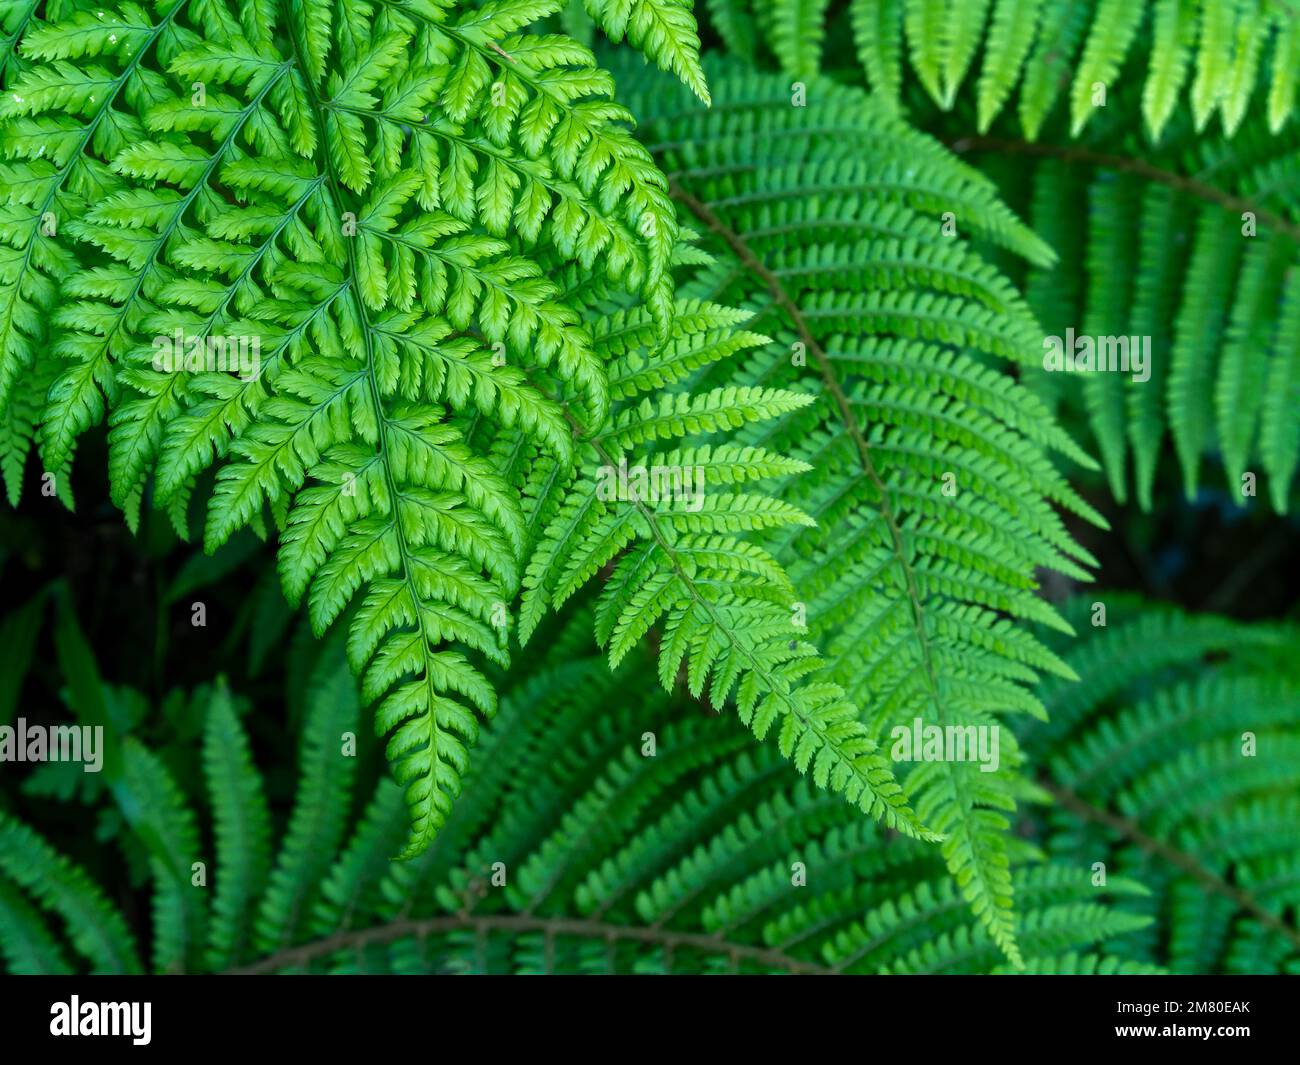 Schöne Blätter eines Farns. Dichtes grünes Laub, Makro. Grünfarnpflanze in Nahaufnahme Stockfoto